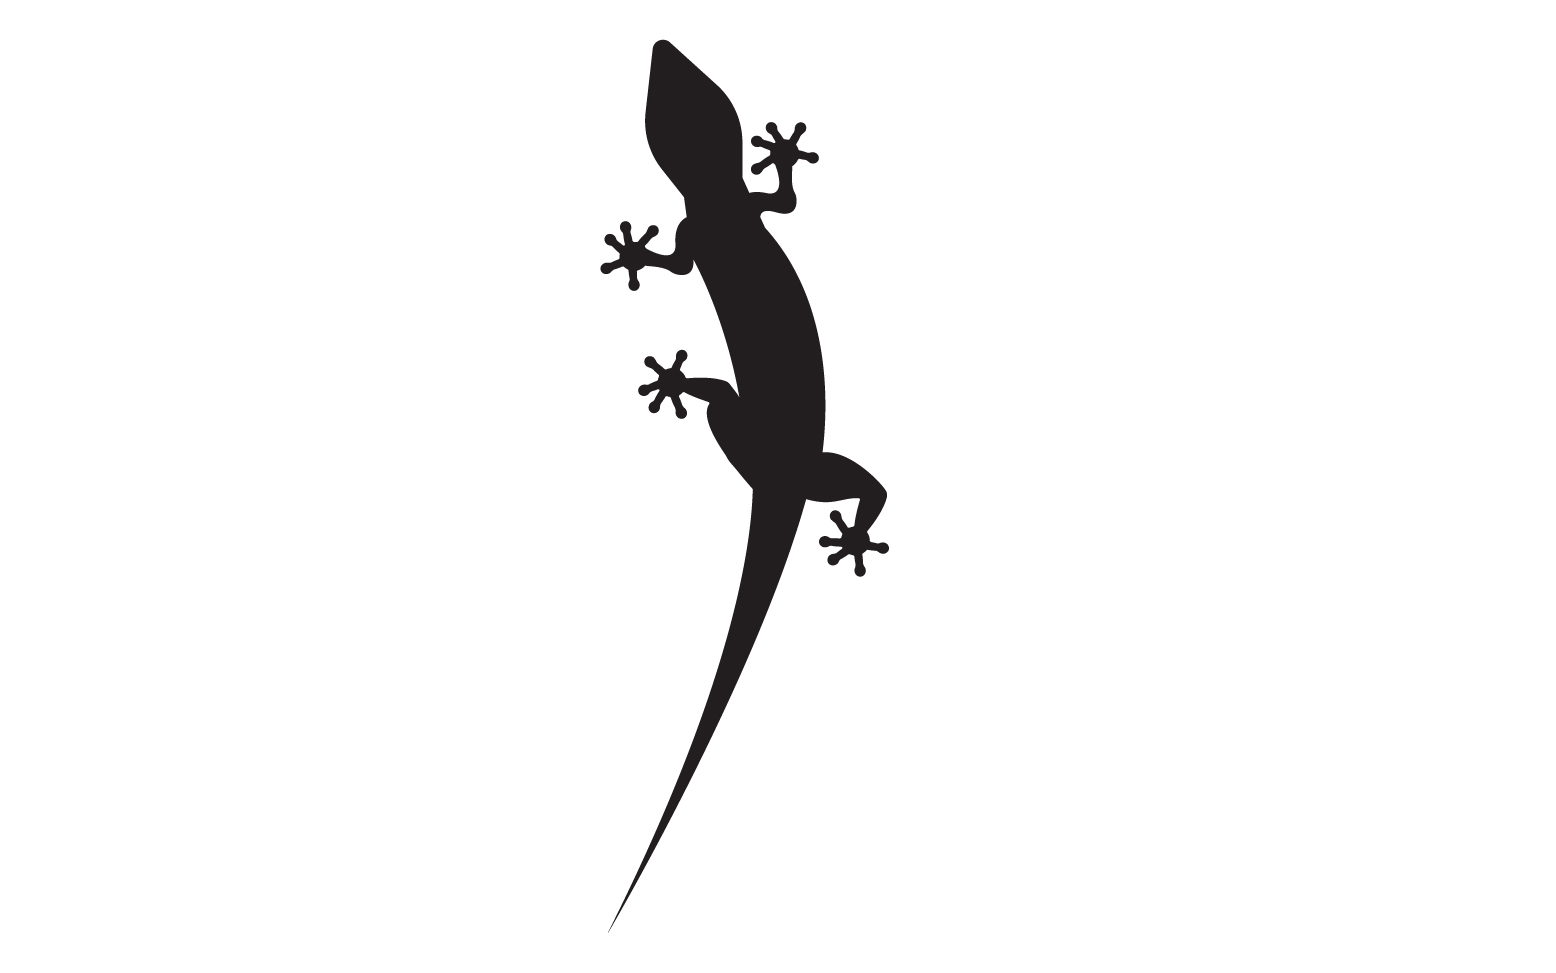 Lizard chameleon home lizard logo v28